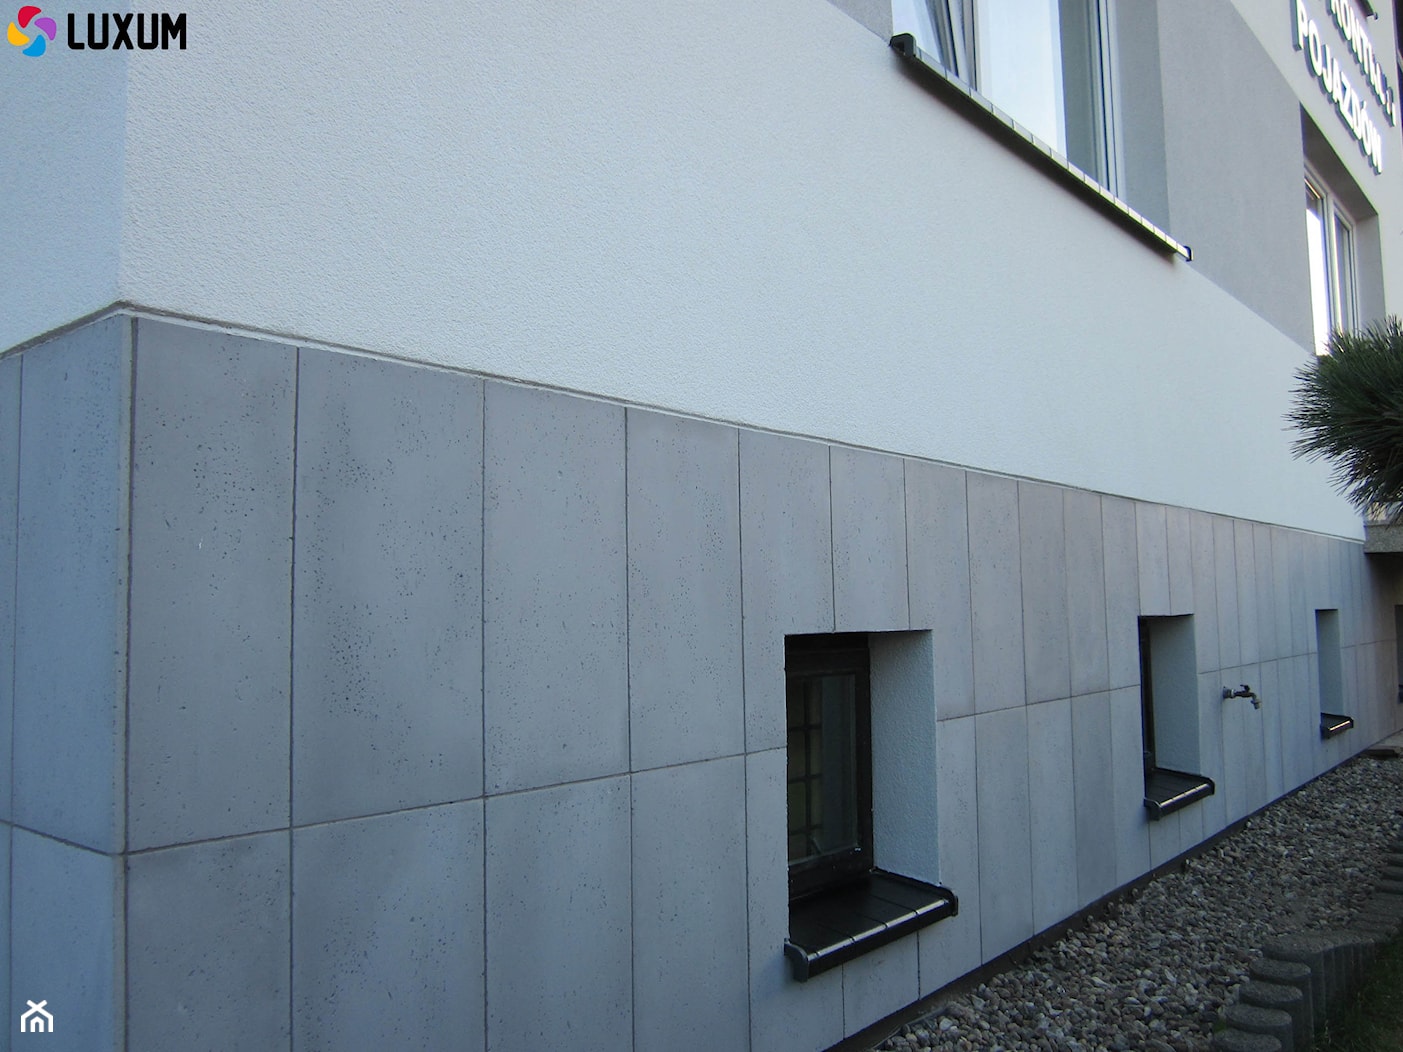 Elewacja z płyt z betonu architektonicznego - zdjęcie od Luxum - Homebook